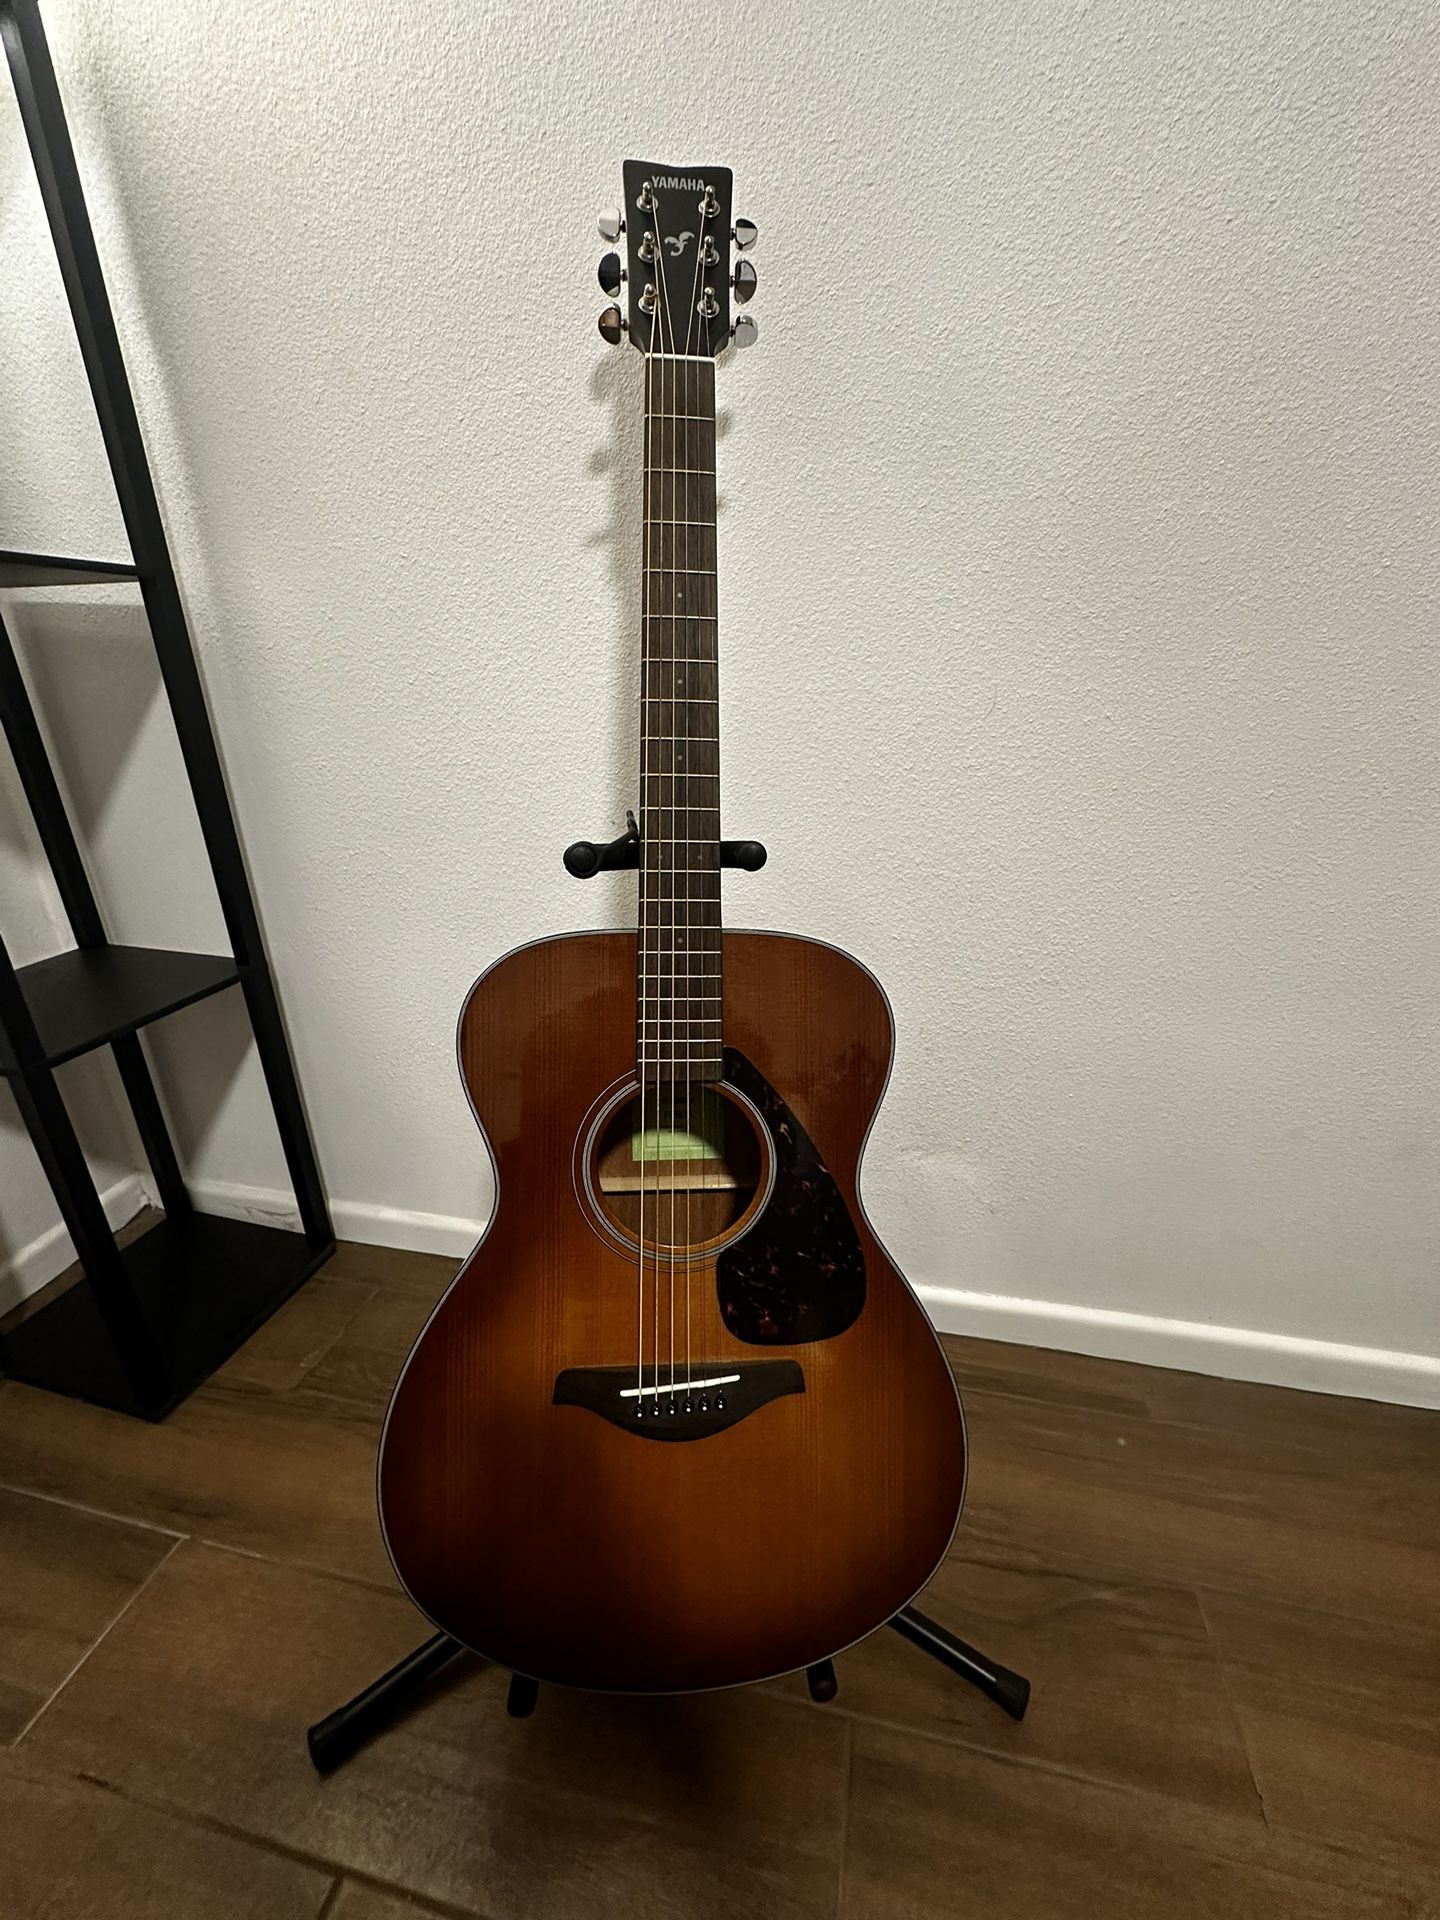 Yamaha FS800 Guitar